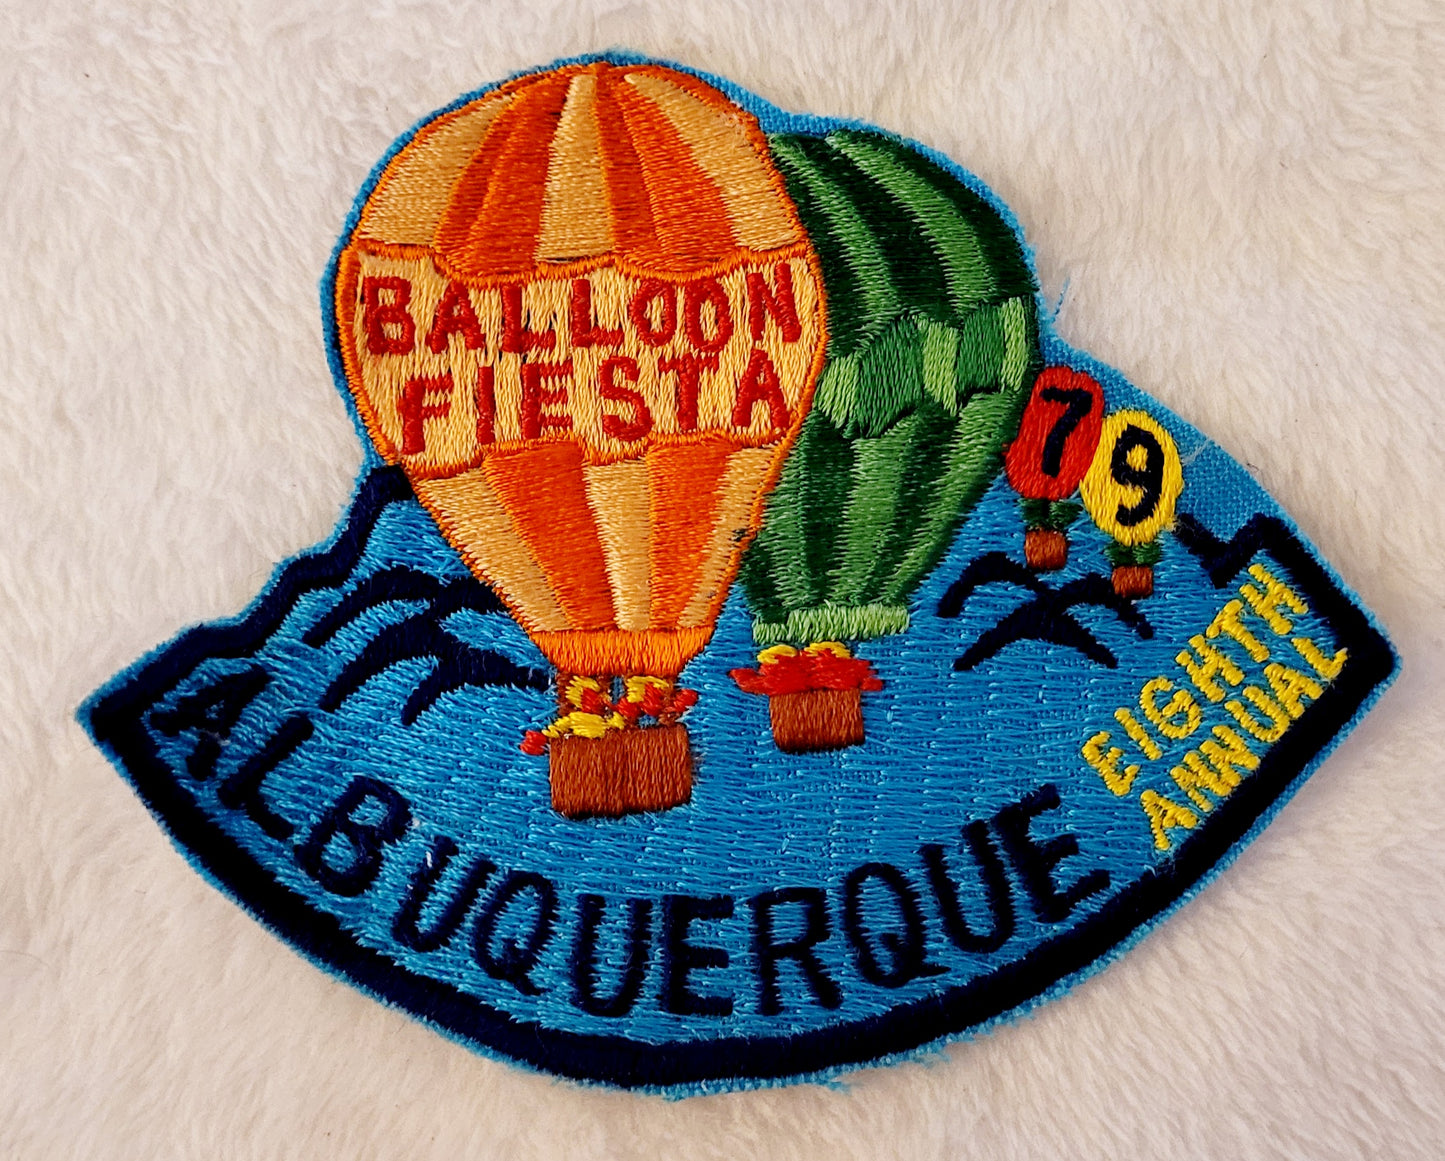 Eighth Annual Fiesta 1979 *ABQ Int'l Balloon Fiesta Patch